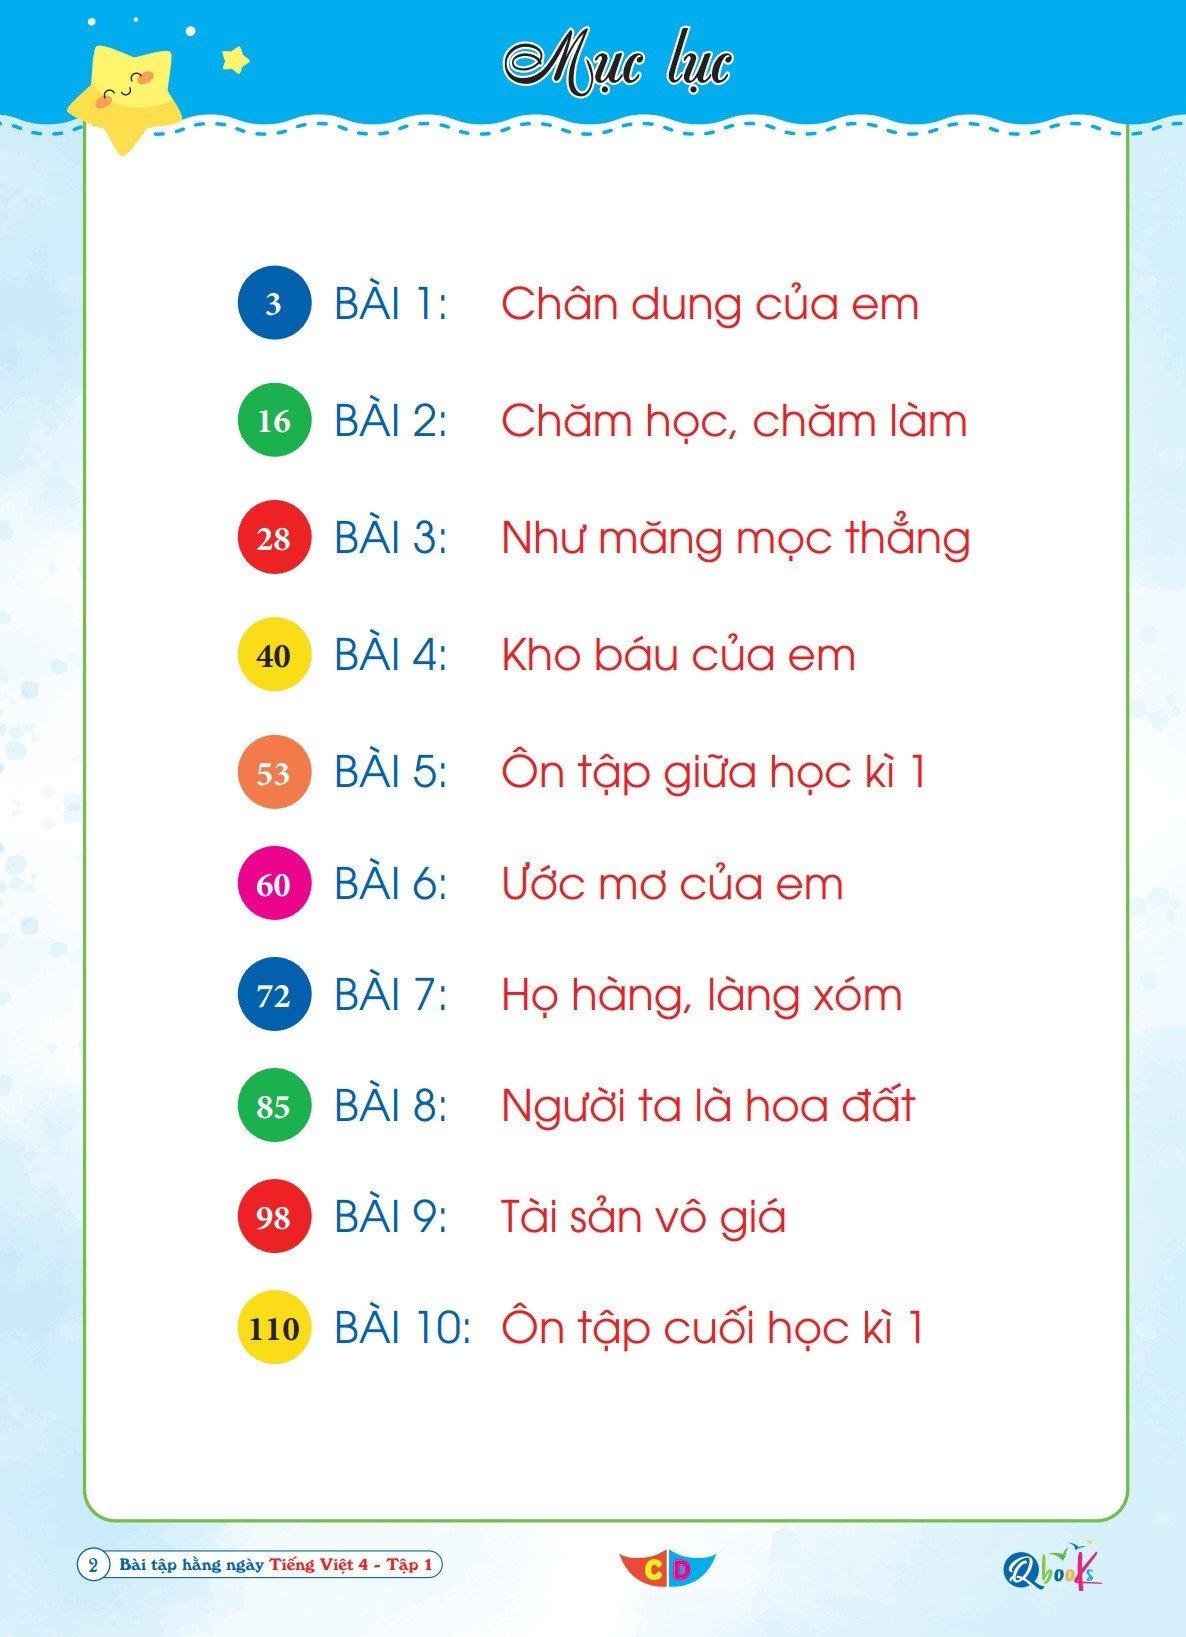 Sách Bài Tập Hằng Ngày Tiếng Việt 4 - Tập 1 - Cánh Diều (1 cuốn) - Bản Quyền